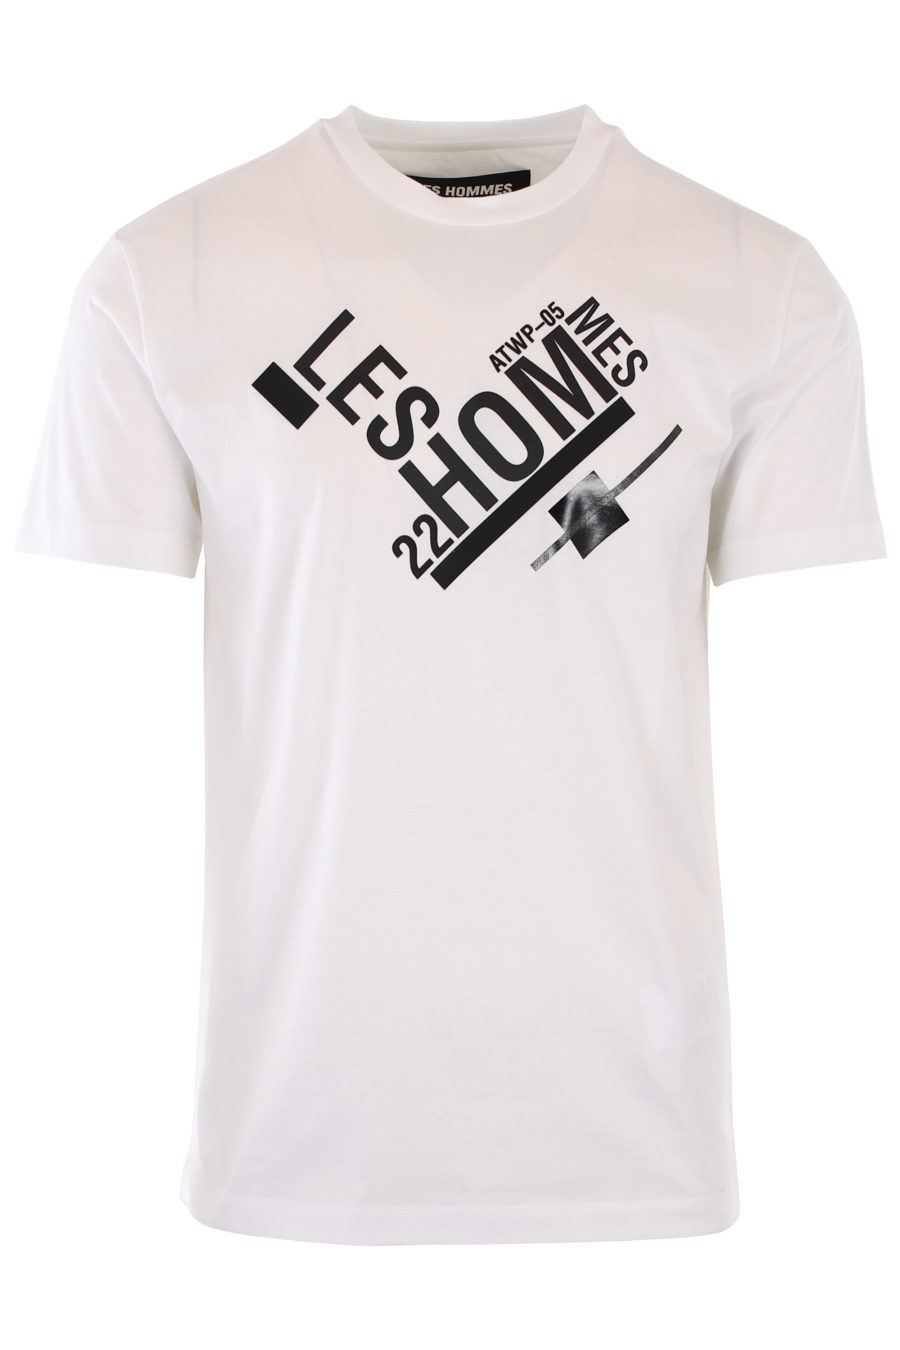 Camiseta blanca con logo gráfico negro - IMG 1098